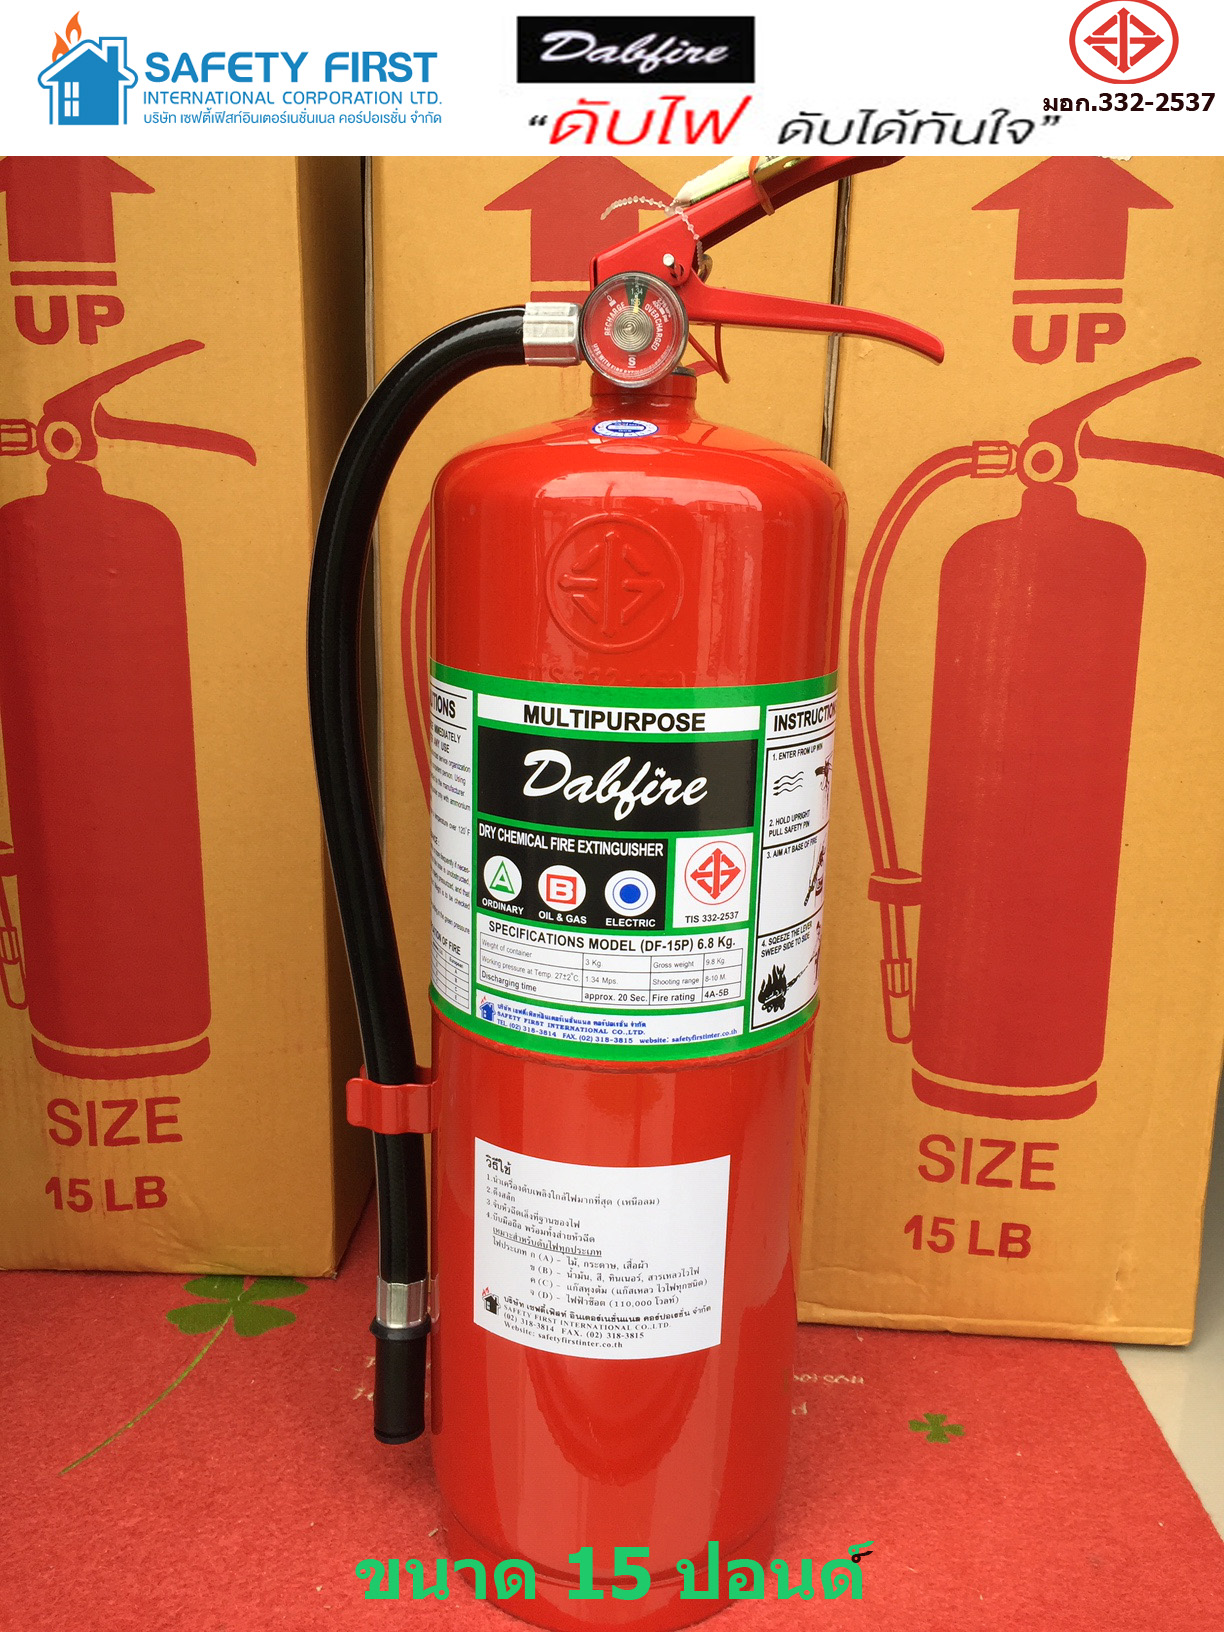 ถังดับเพลิงชนิดผงเคมีแห้ง ขนาด 15 ปอนด์ แถมขายึด,พุก,น็อต 4A5B  Dry Chemical Fire Extinguisher